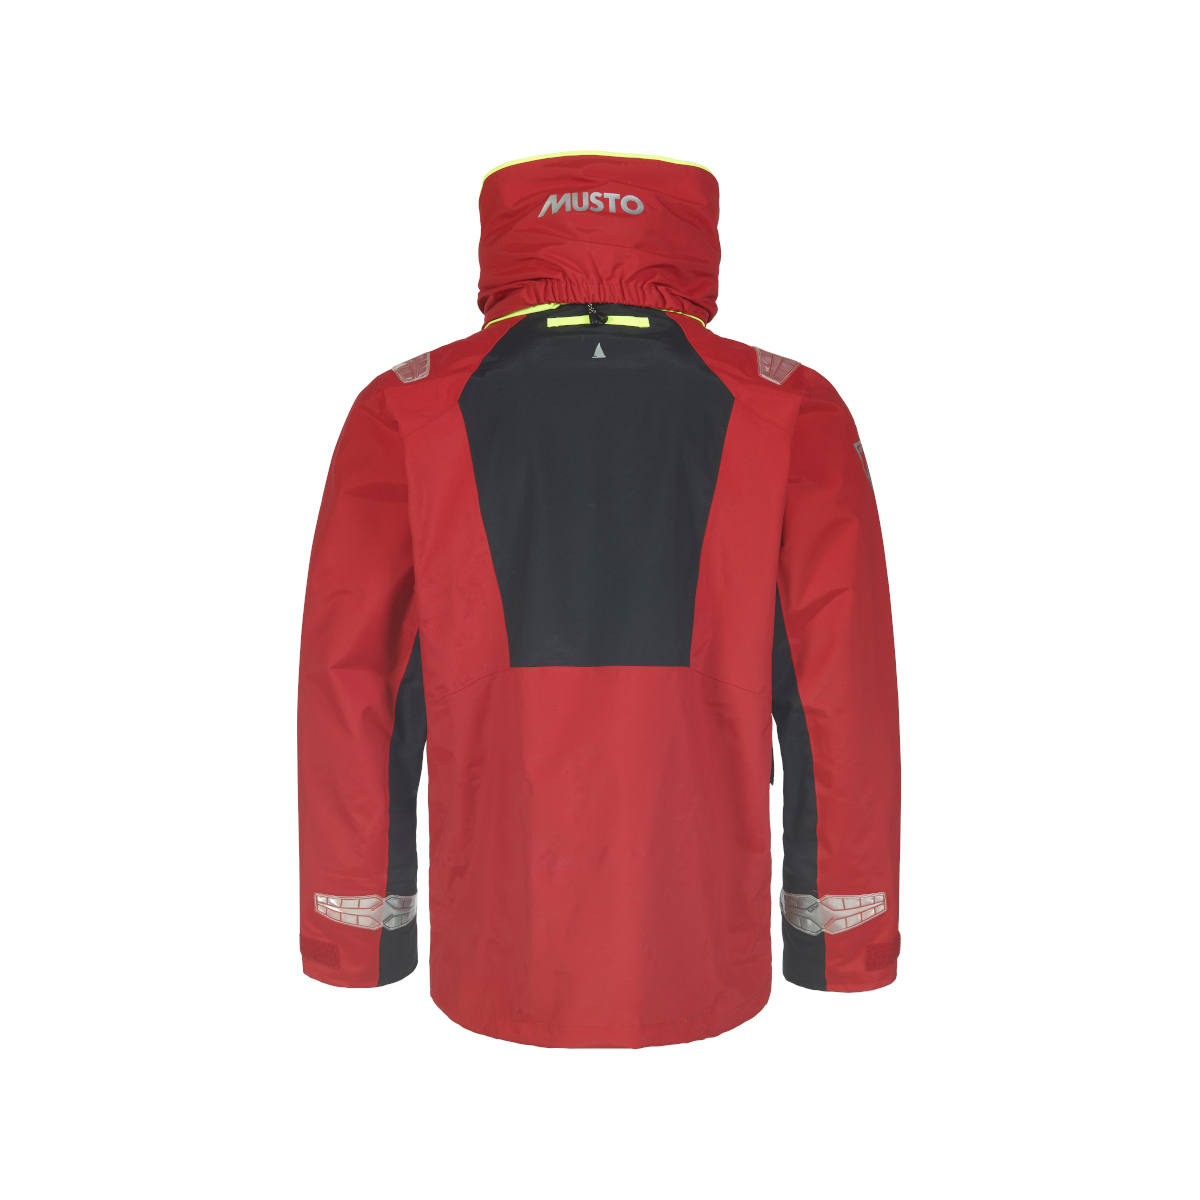 Musto BR2 veste de voile Offshore 2.0 homme rouge, taille L